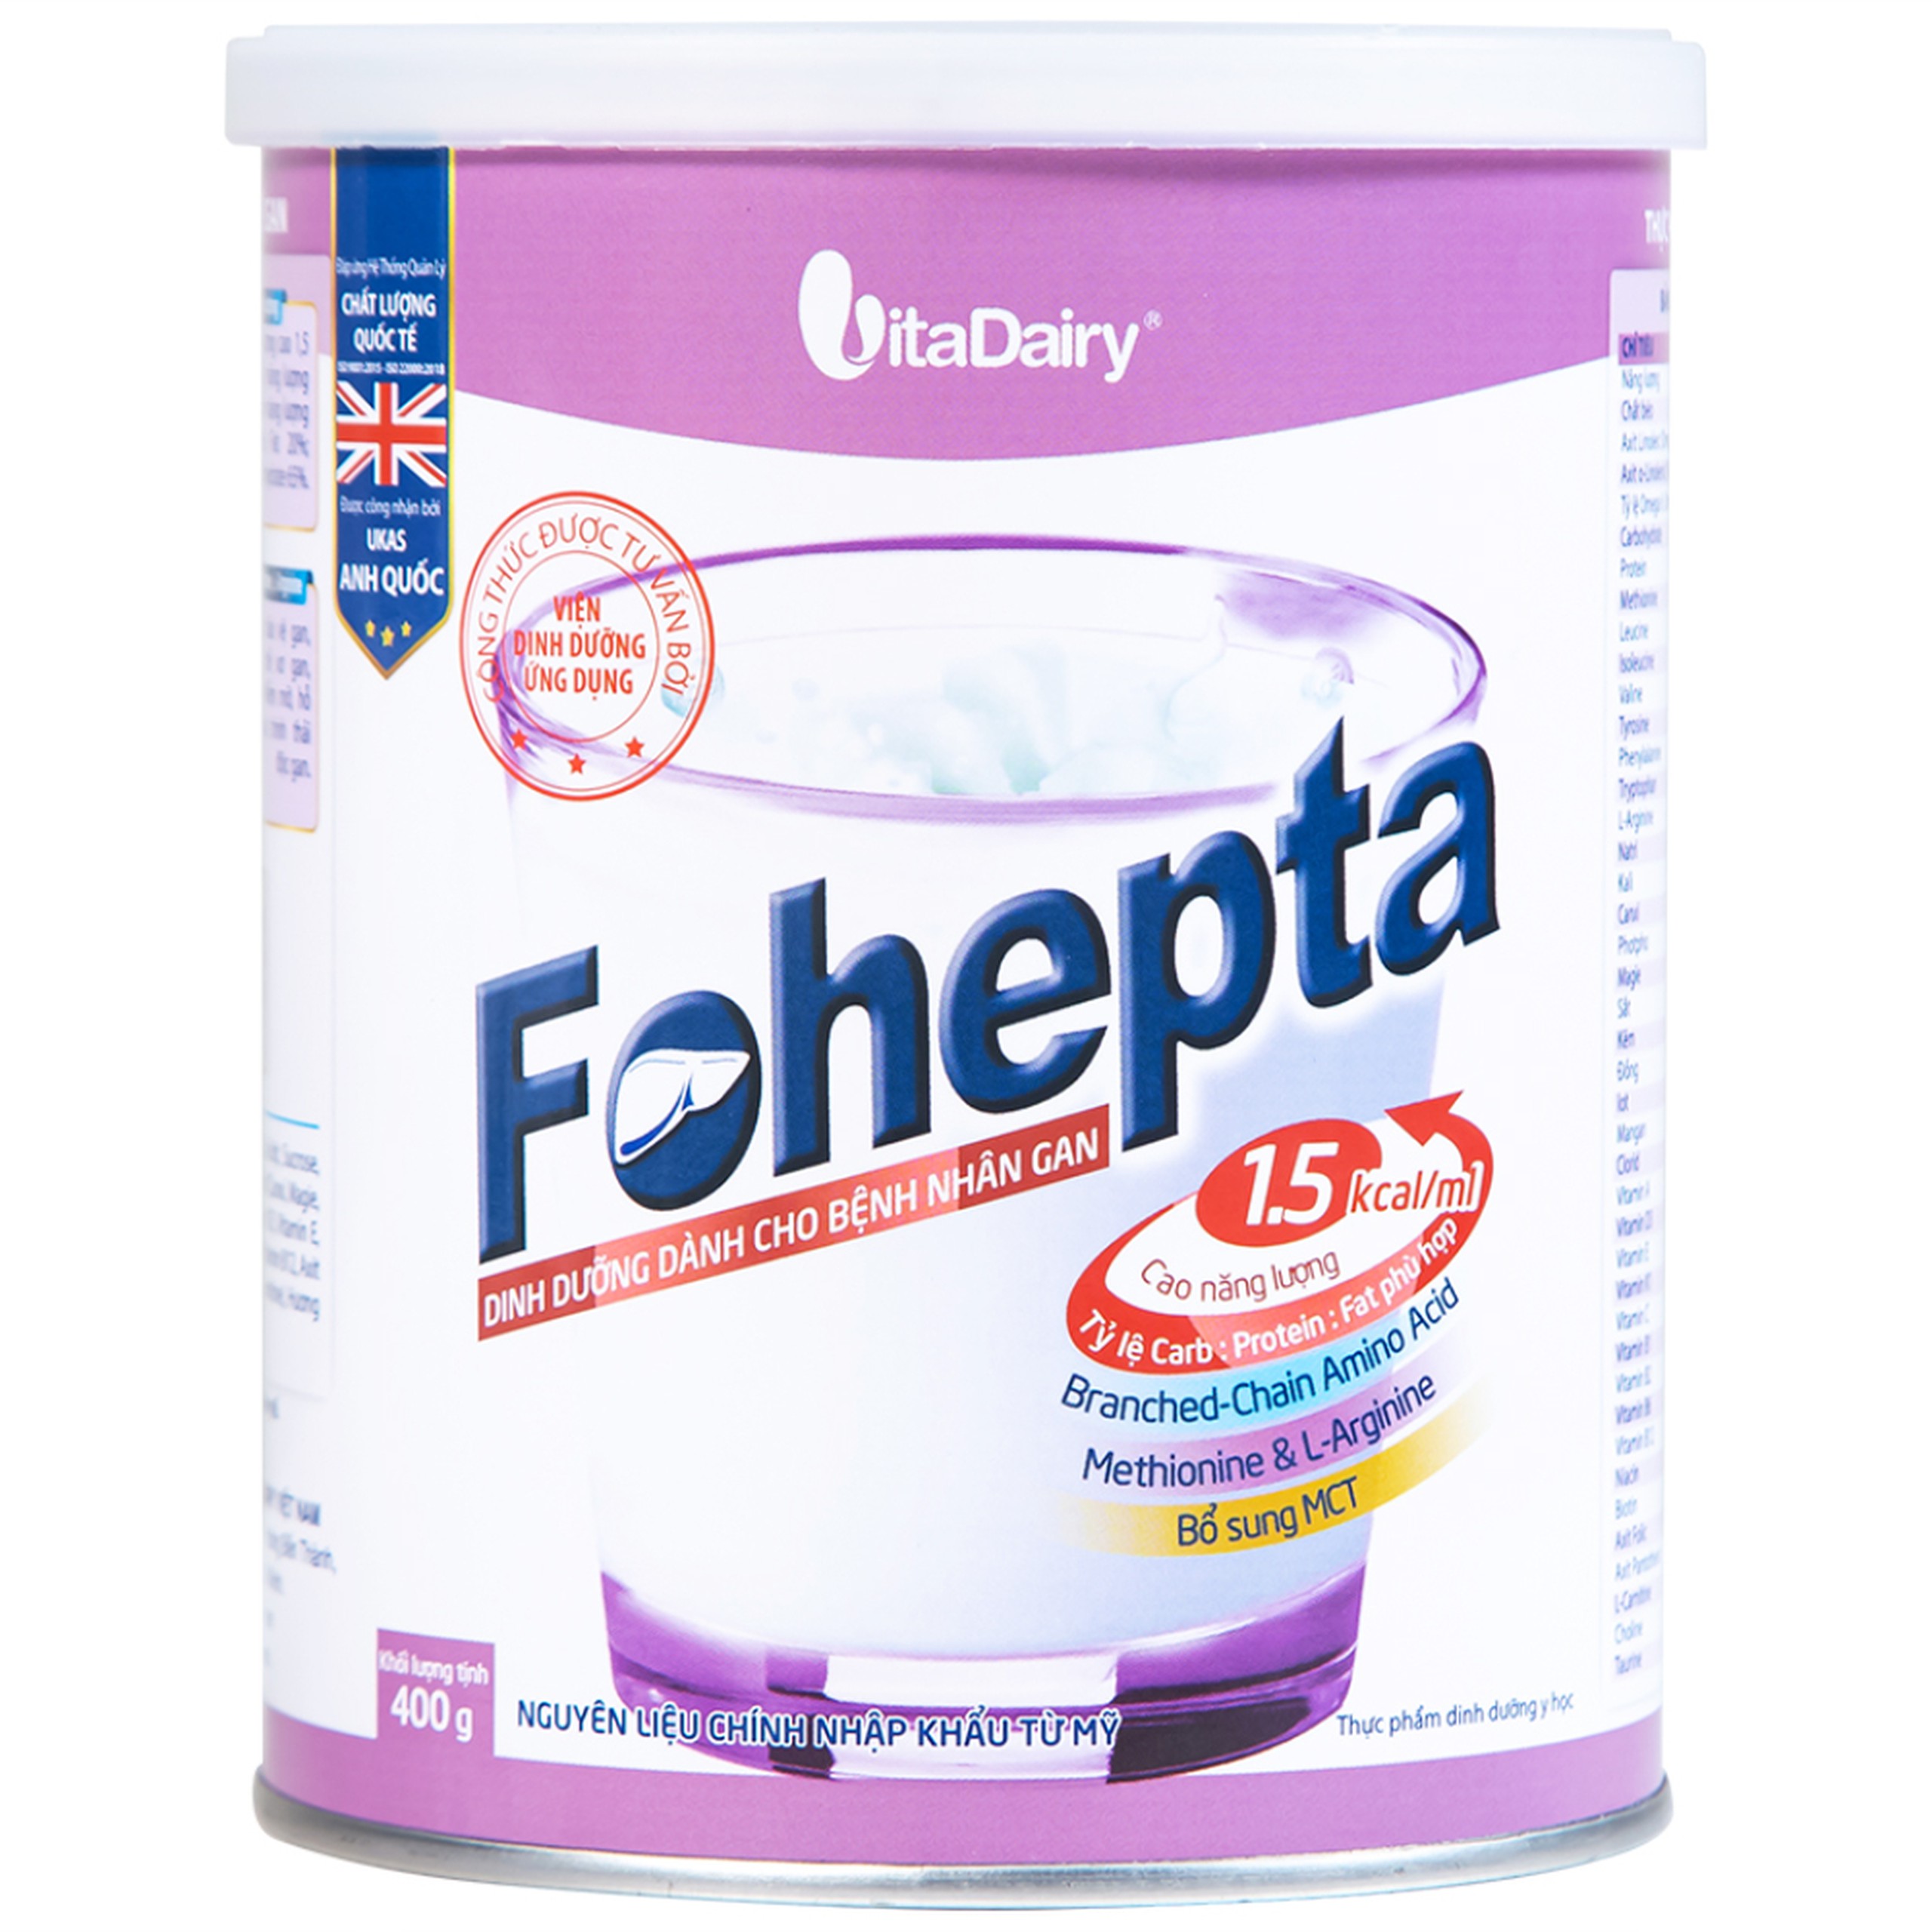 Sữa bột Fohepta Vitadairy dinh dưỡng dành cho bệnh nhân gan (400g)